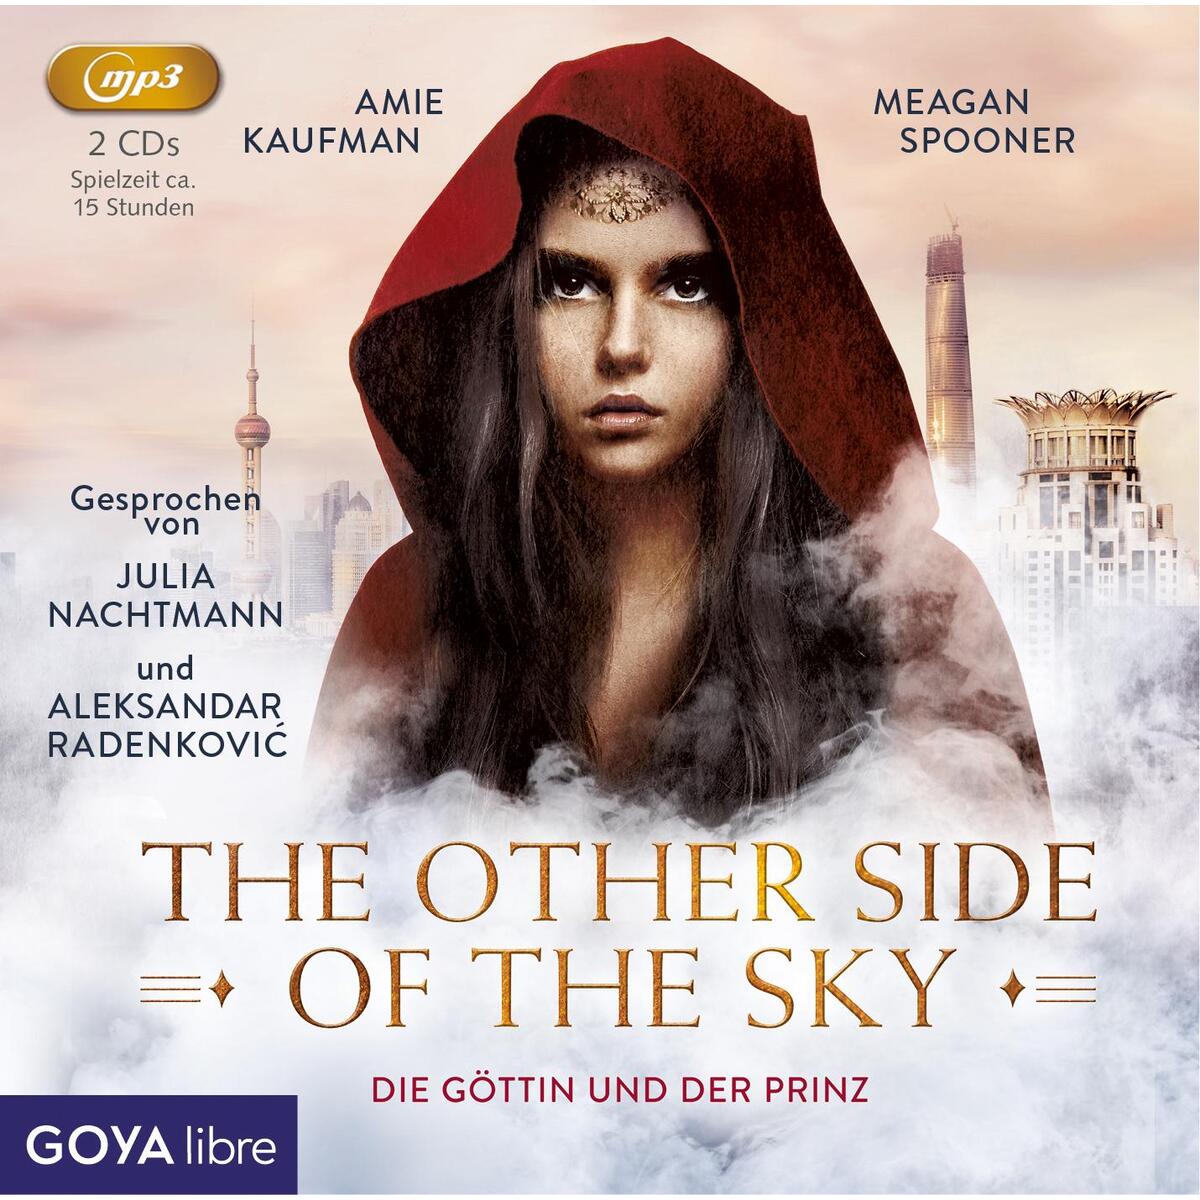 The other side of the sky 01. Die Göttin und der Prinz von Jumbo Neue Medien + Verla